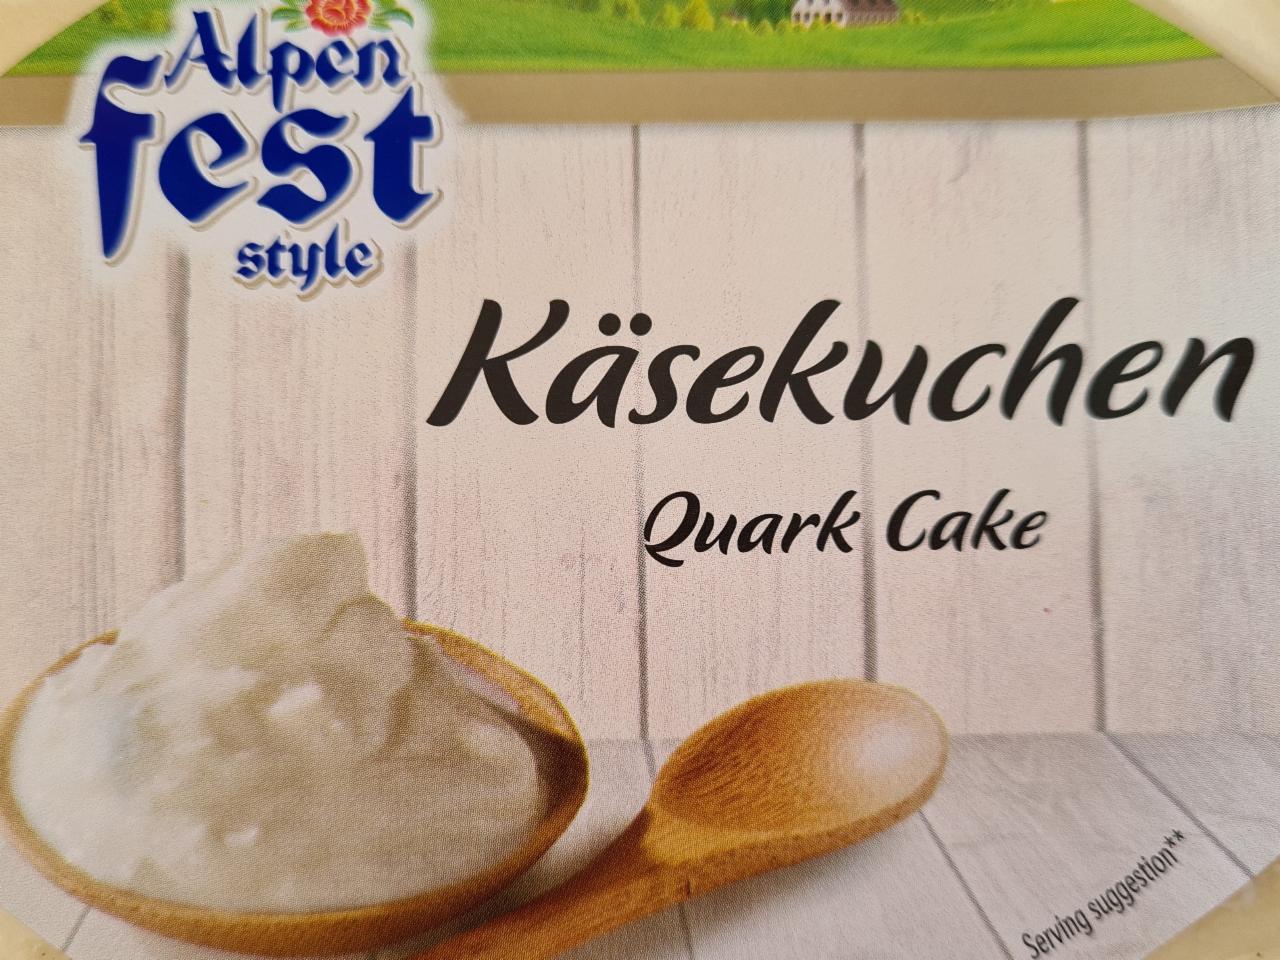 Fotografie - Käsekuchen Quark Cake Alpen fest style